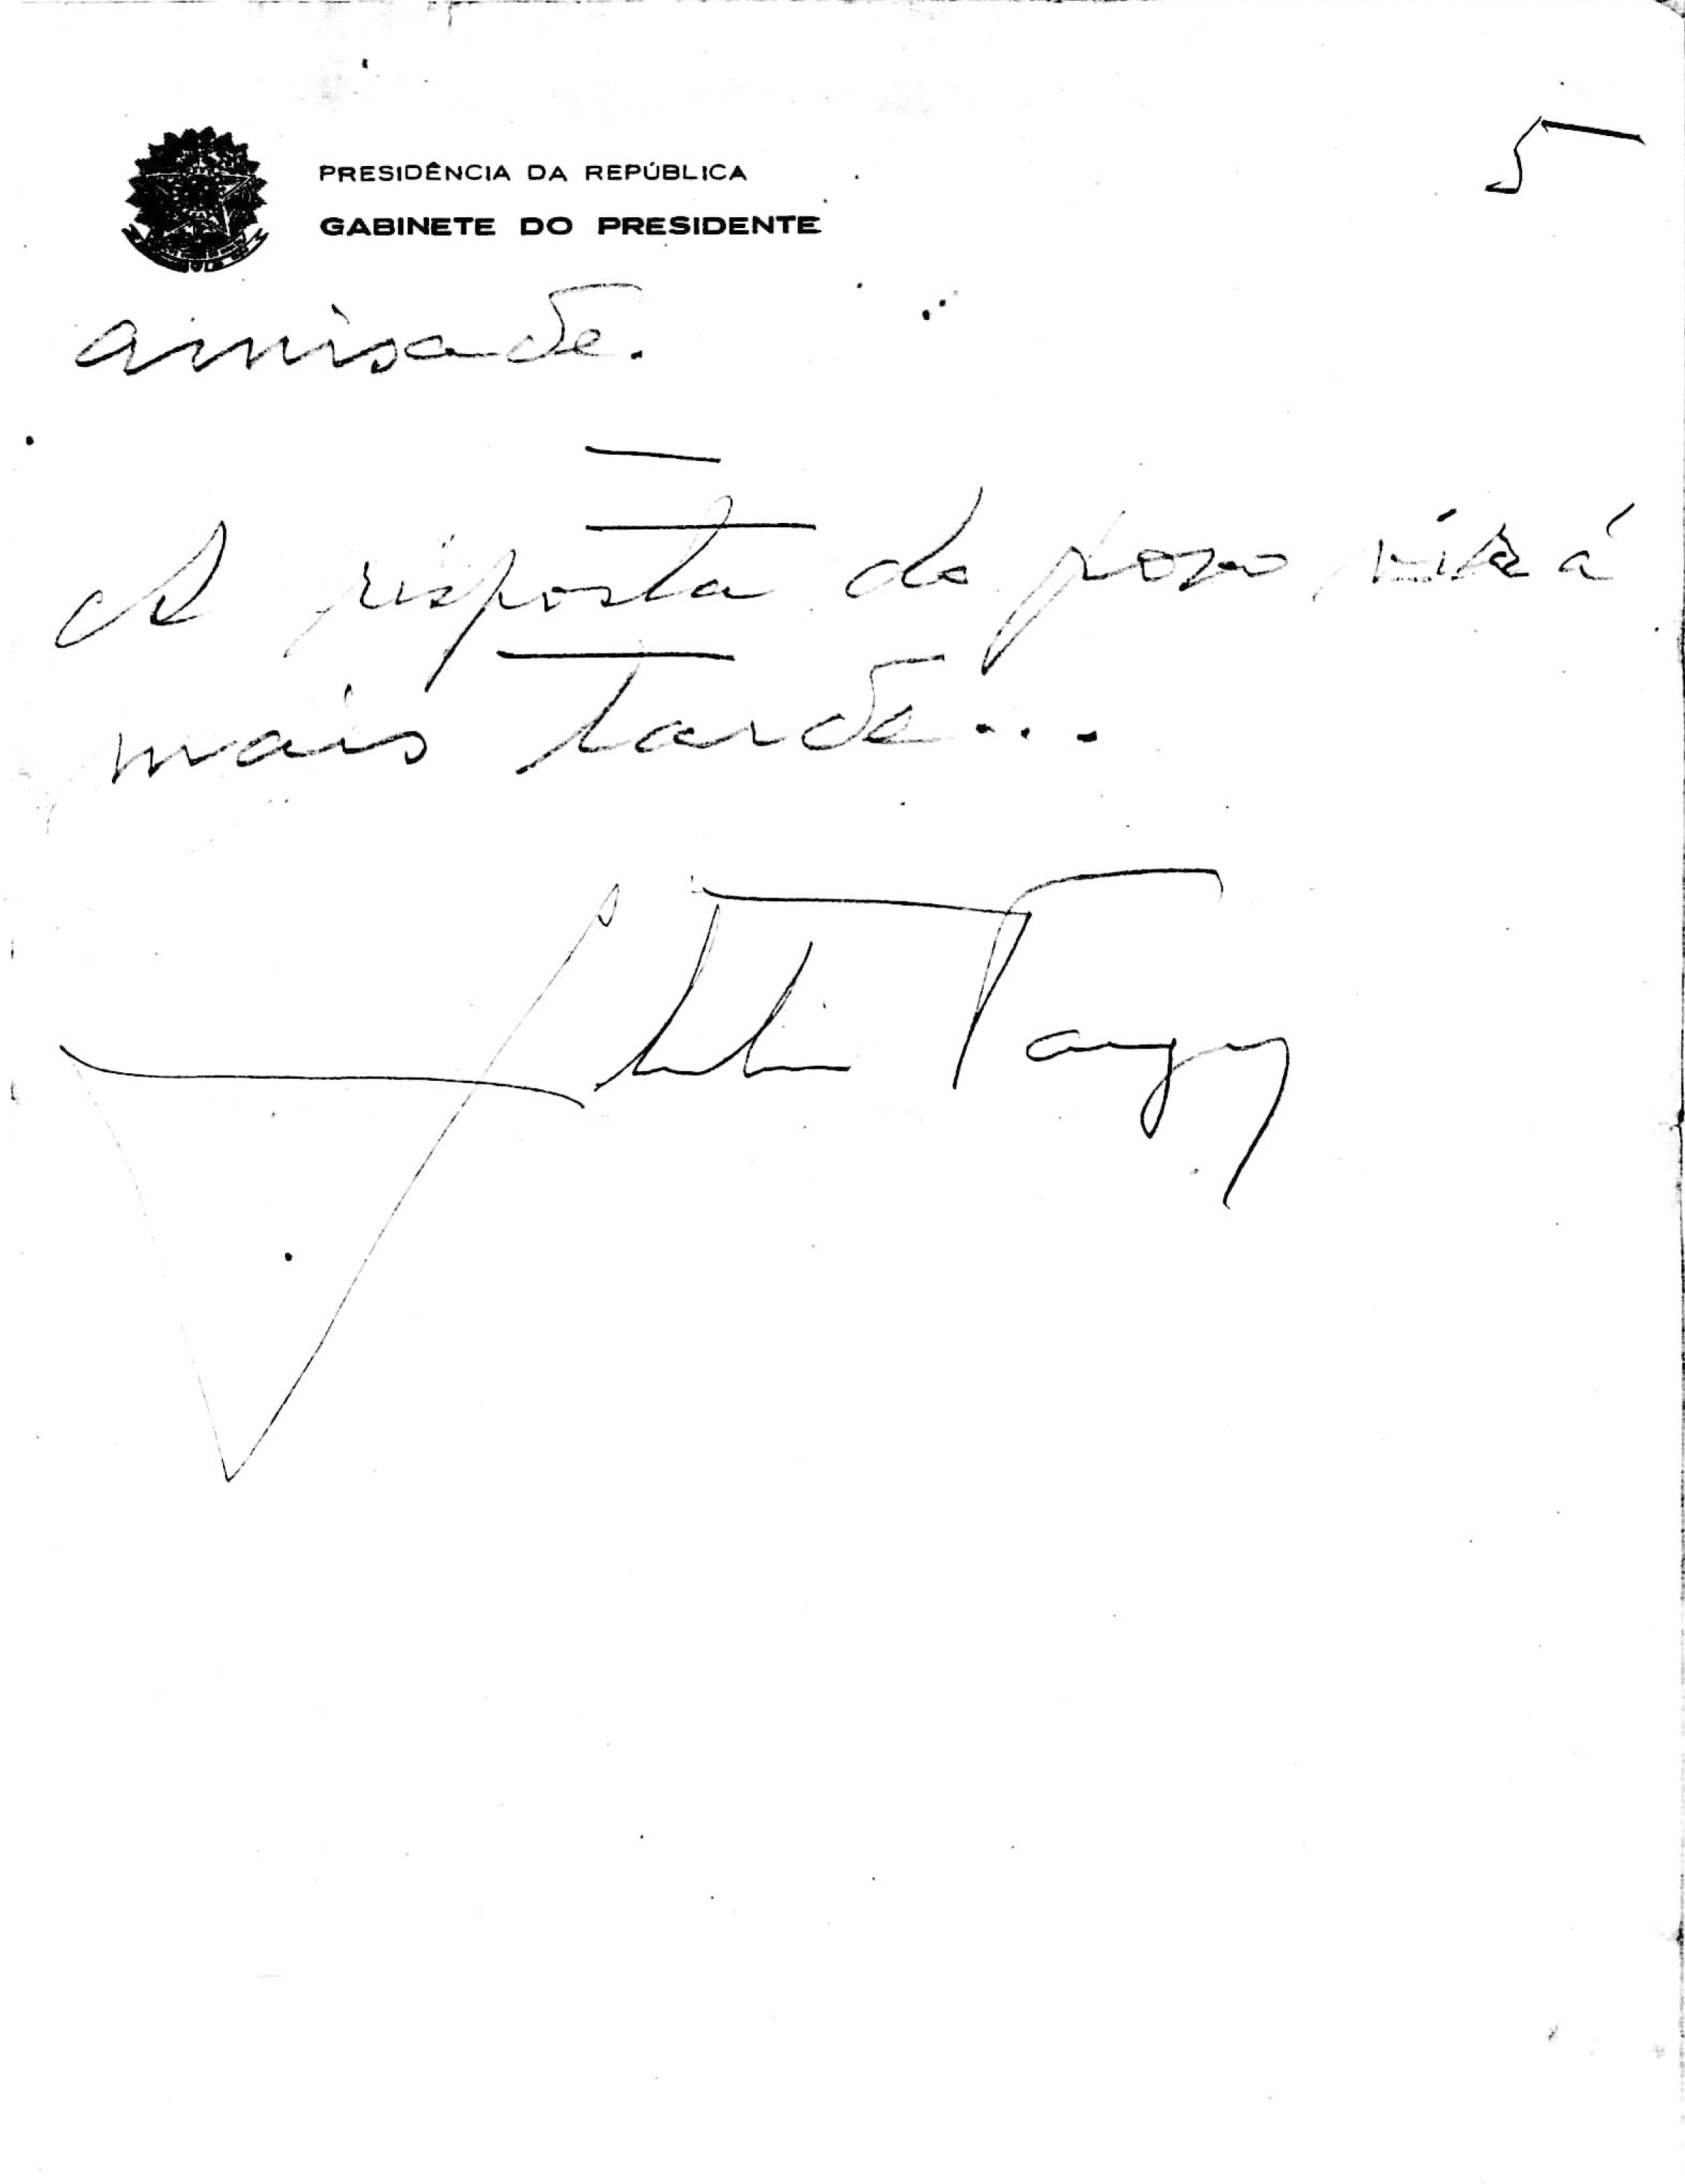 Carta manuscrita de Getúlio Vargas, agosto de 1954. Arquivo Getúlio Vargas/ Fundação Getúlio Vargas - CPDOC